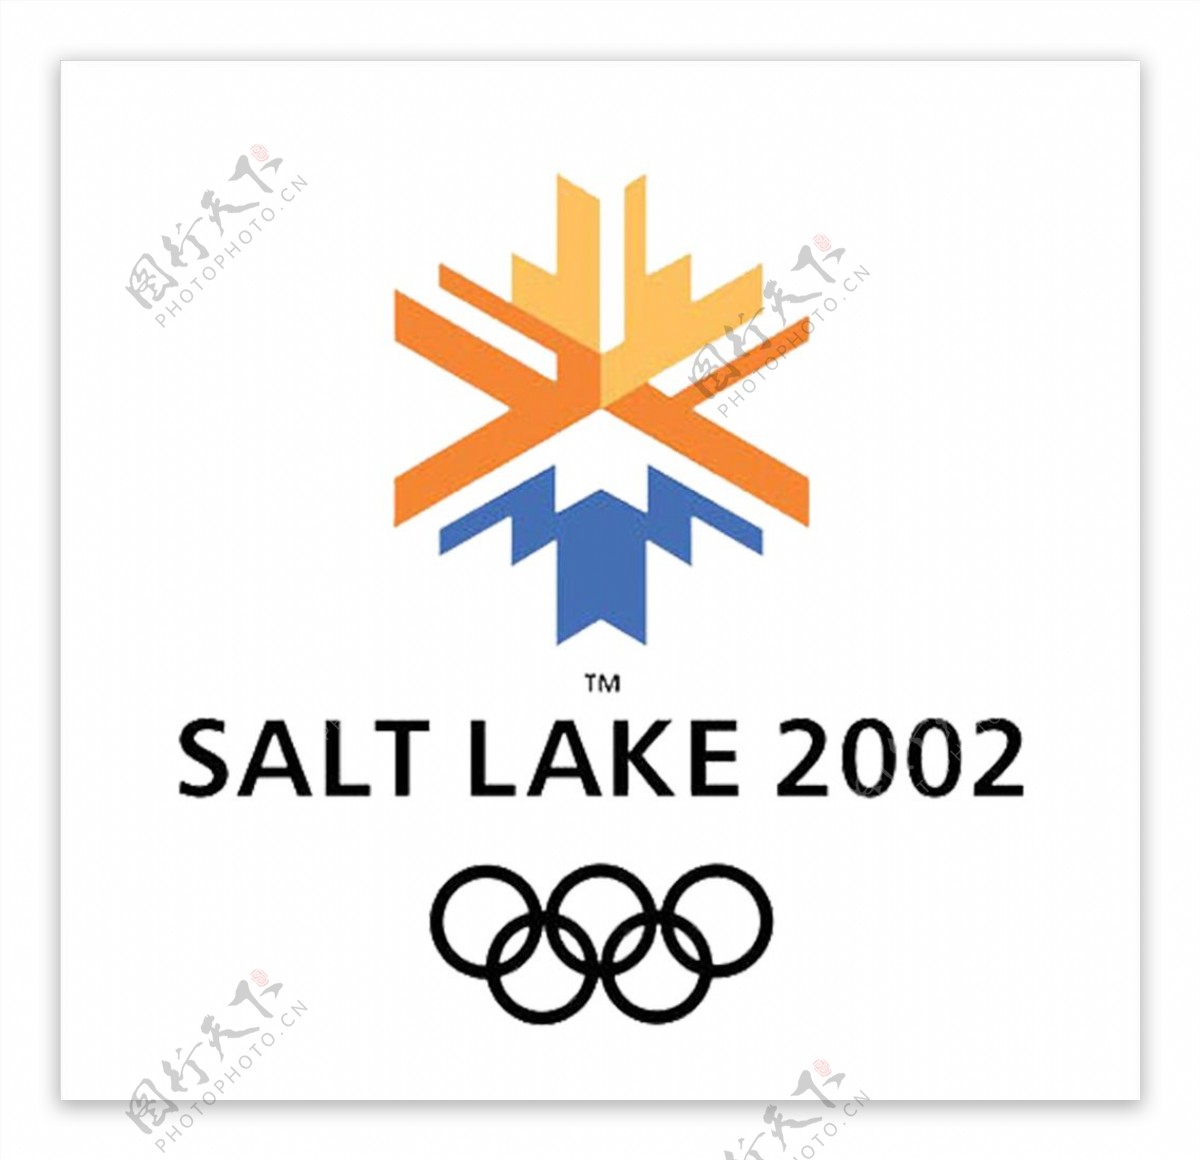 2002年第十九届冬奥会会徽